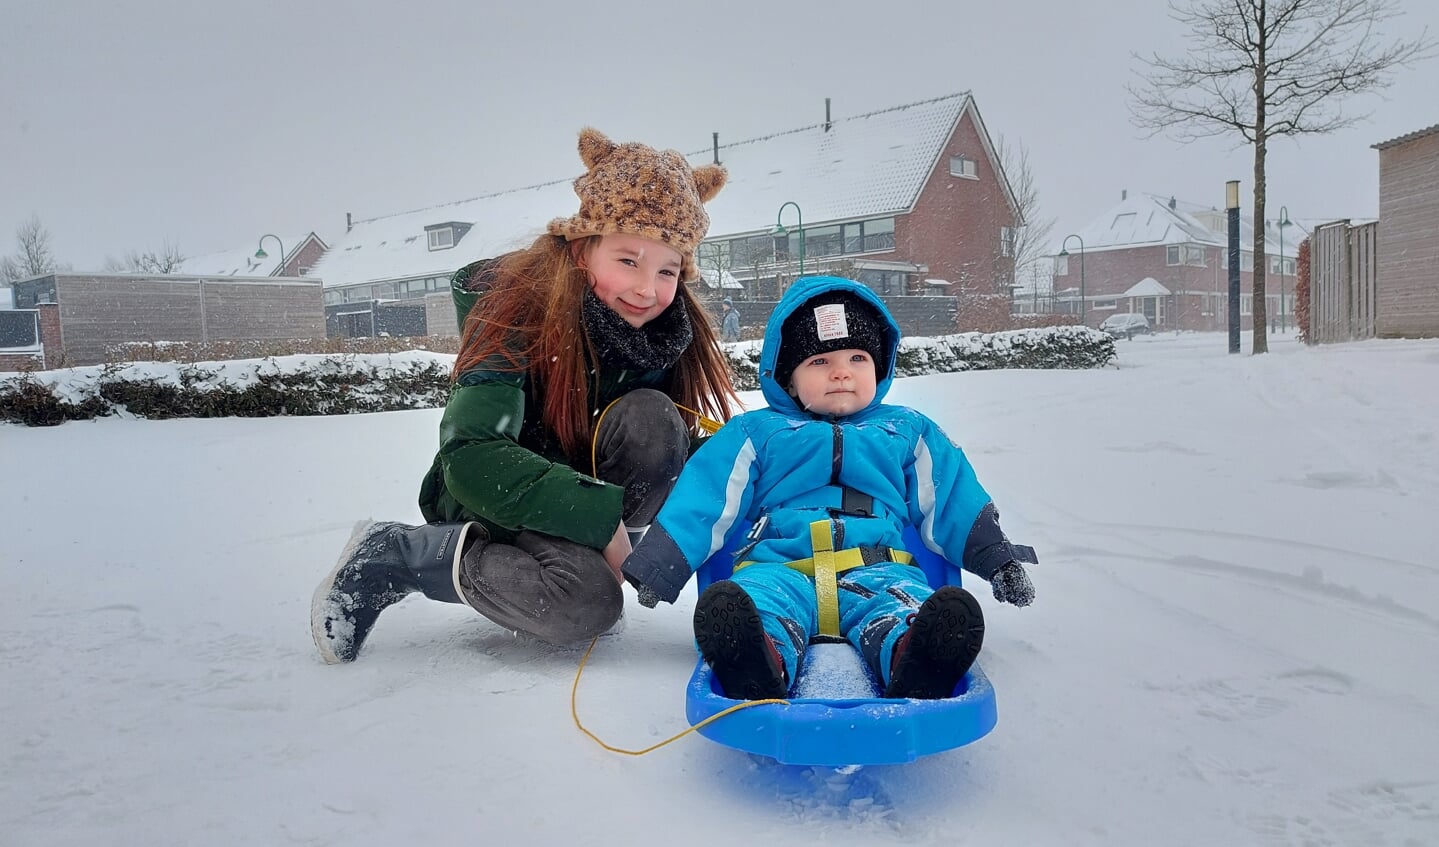 Koen Dokter en Loïs Verkade genieten van de sneeuw. Deze foto is gemaakt in de Barneveldse wijk De Burght, op de hoek van Valkappel en Zoete Kroon.